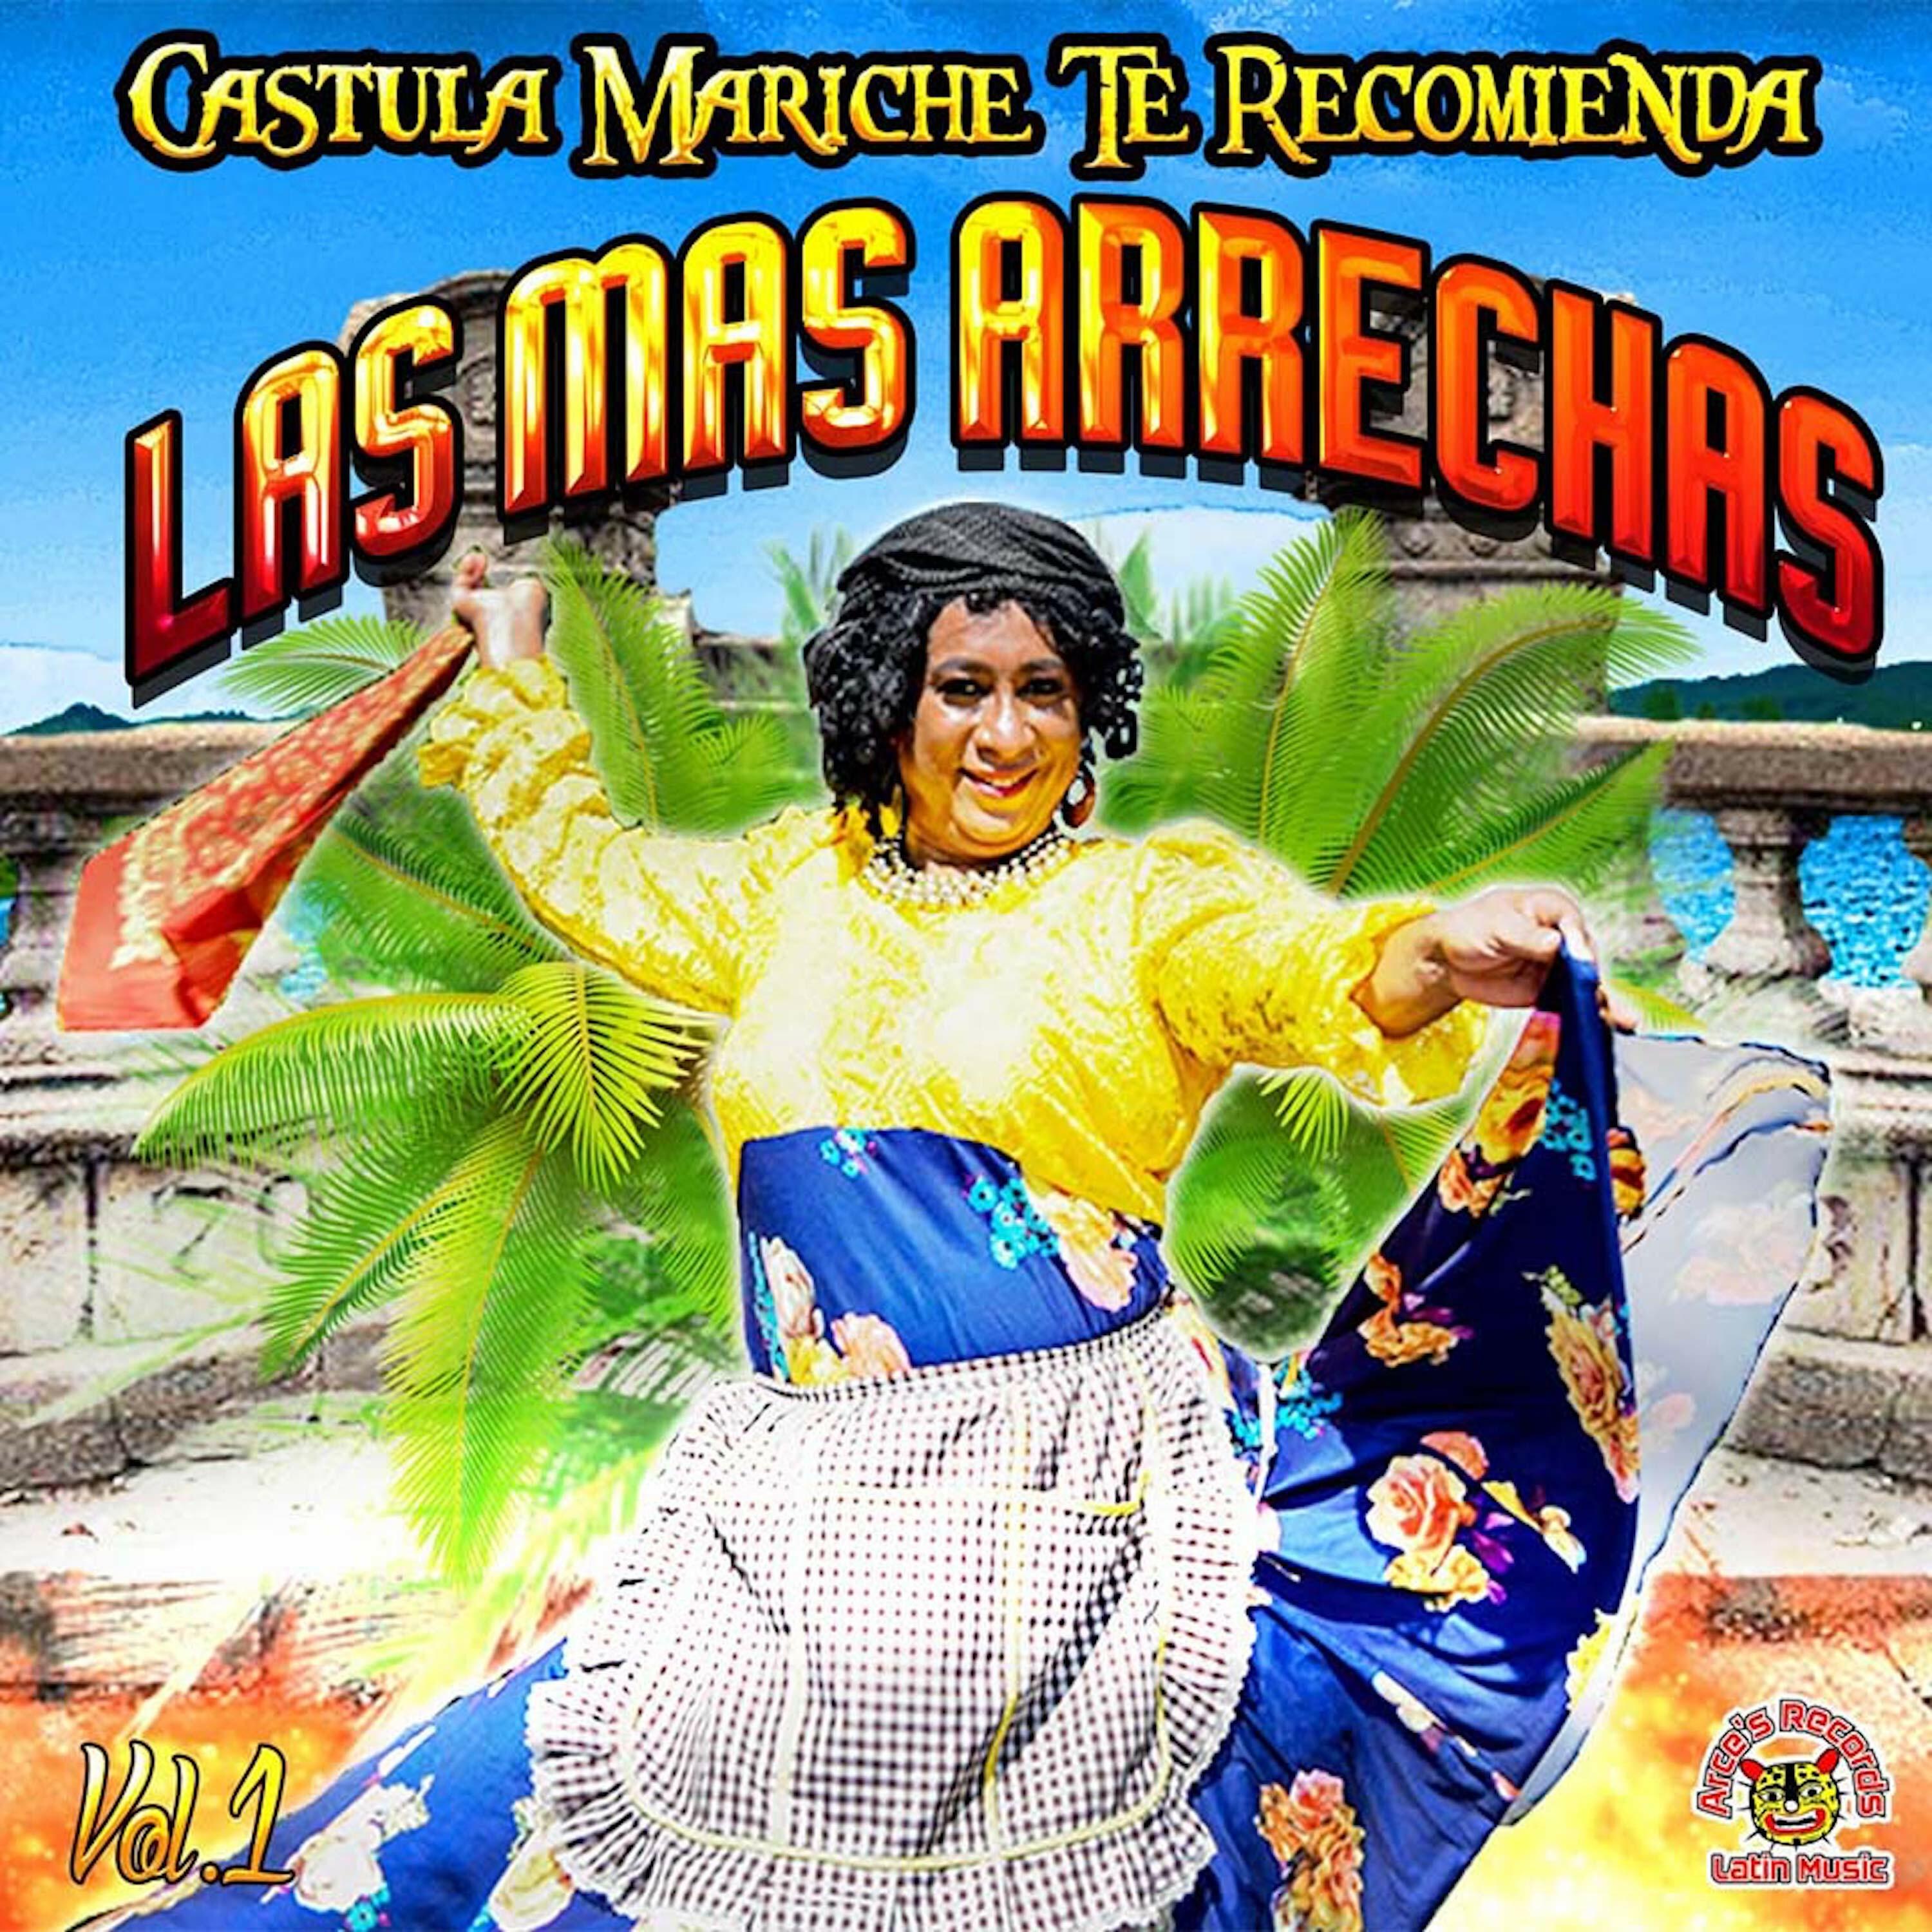 Castula Mariche Te Recomienda "Las Mas Arrechas" Vol. 1